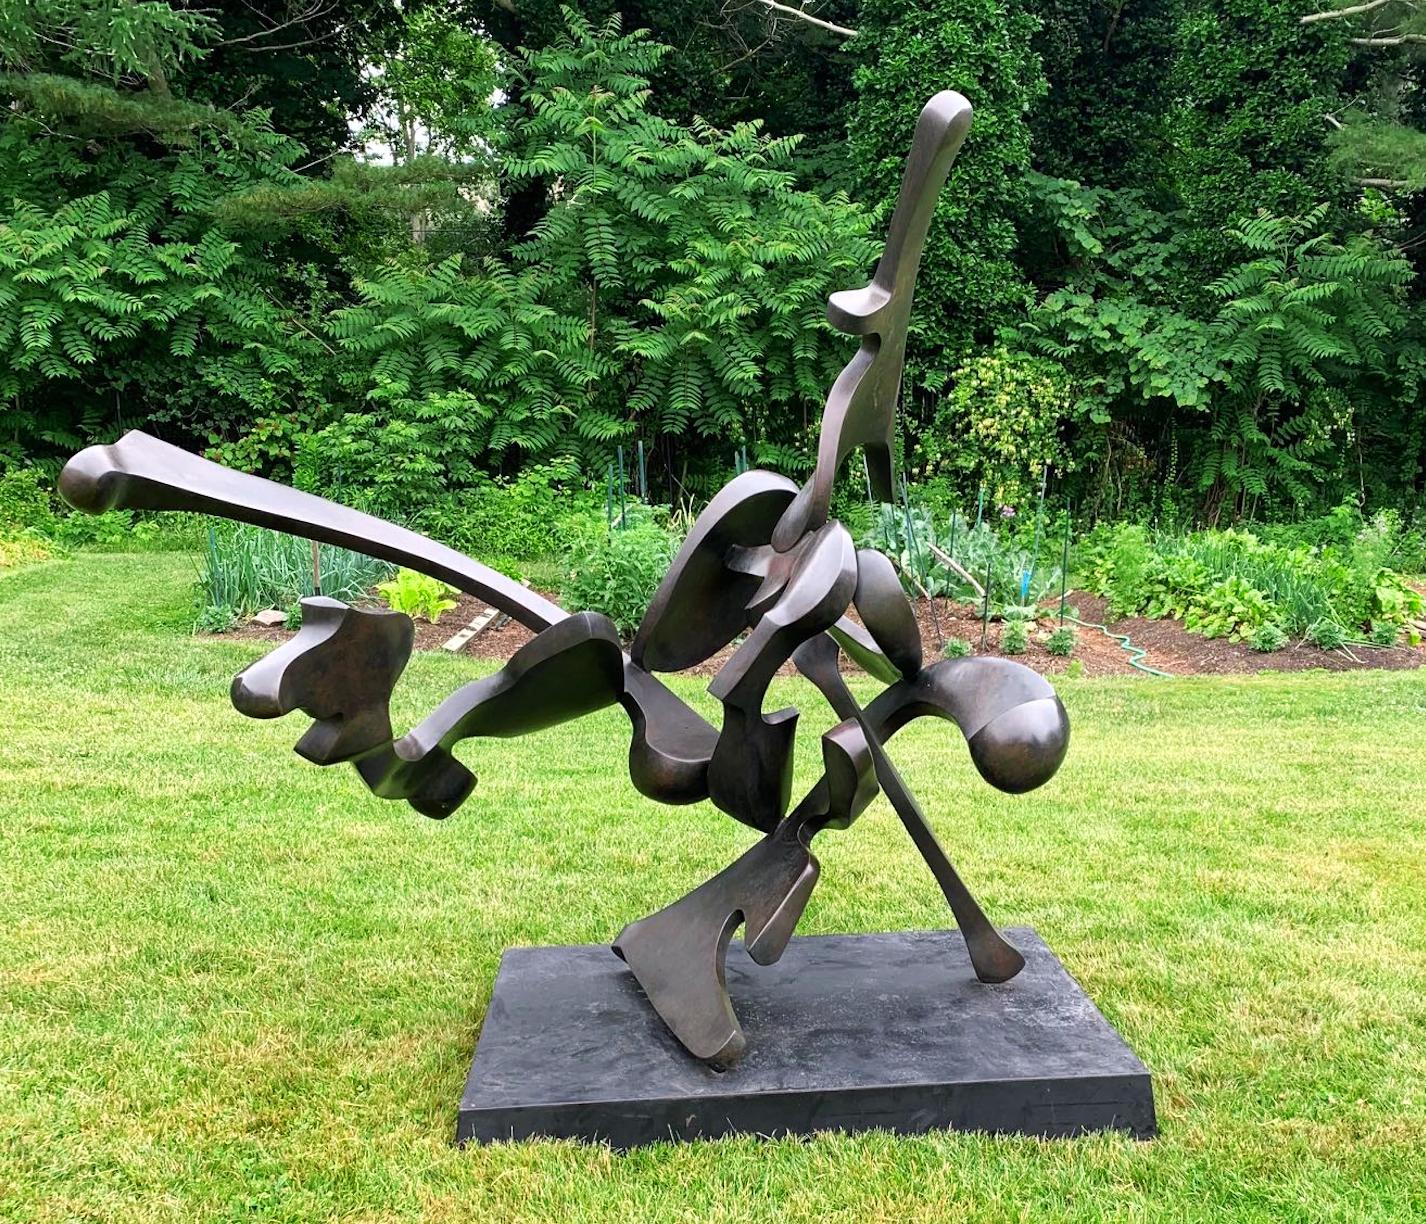 "Muskateer" von Bill Barrett
Abstrakte Metallskulptur, einzigartige Bronze

Bill Barrett gilt als eine zentrale Figur der zweiten Generation amerikanischer Metallbildhauer und ist international für seine abstrakten Skulpturen aus Stahl, Aluminium